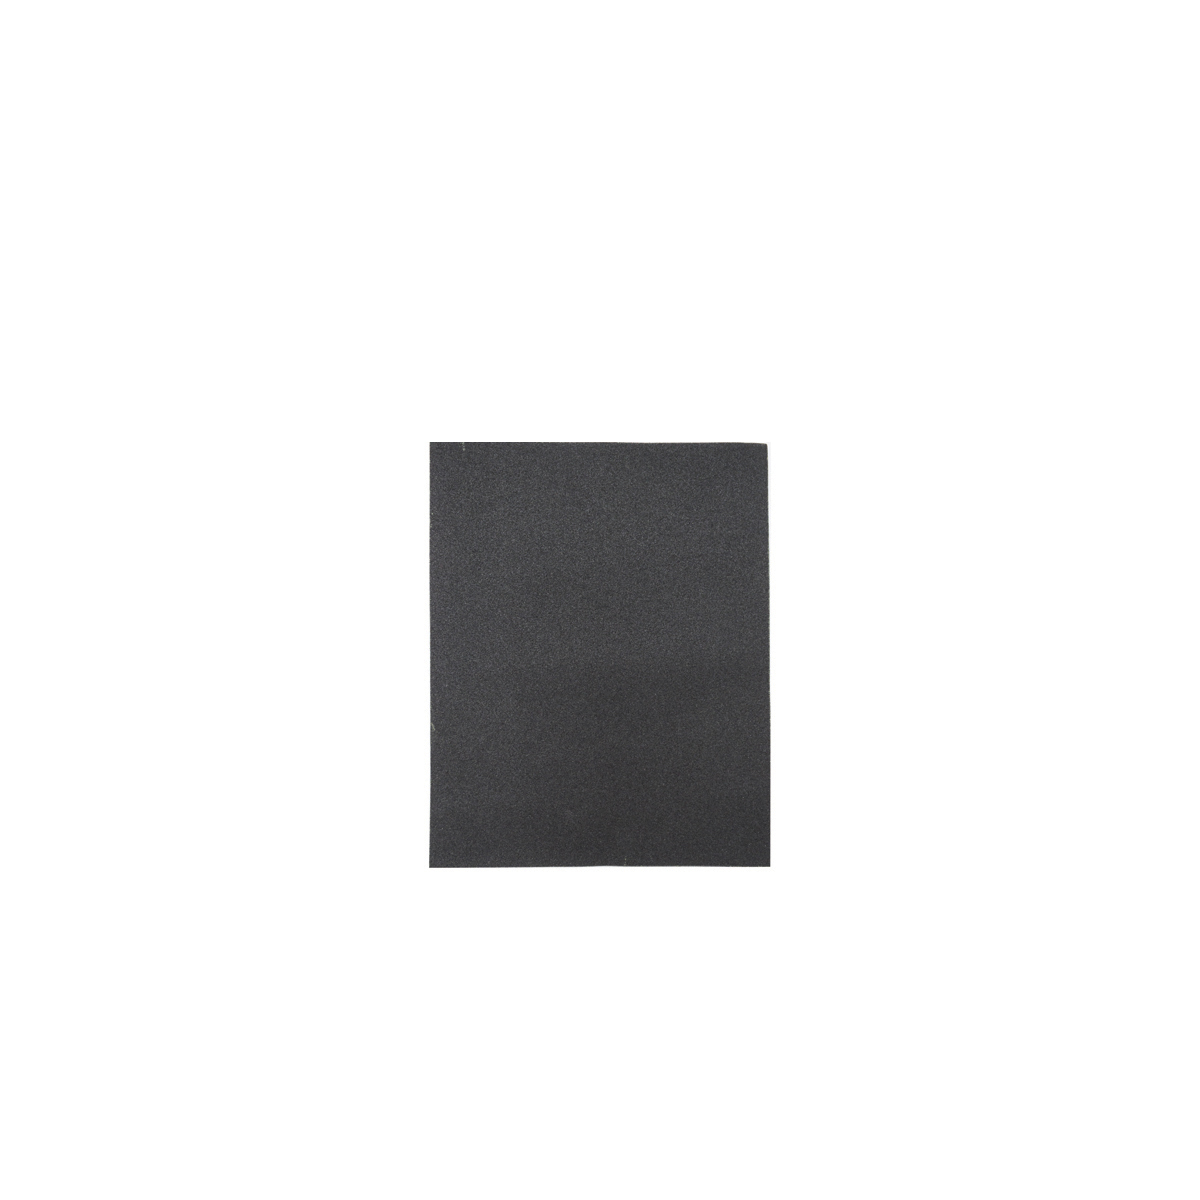 Лист шлифовальный Кедр, P 400, 230 x 280 мм, водостойкий,   бумага, 10 шт шлифовальный лист stayer